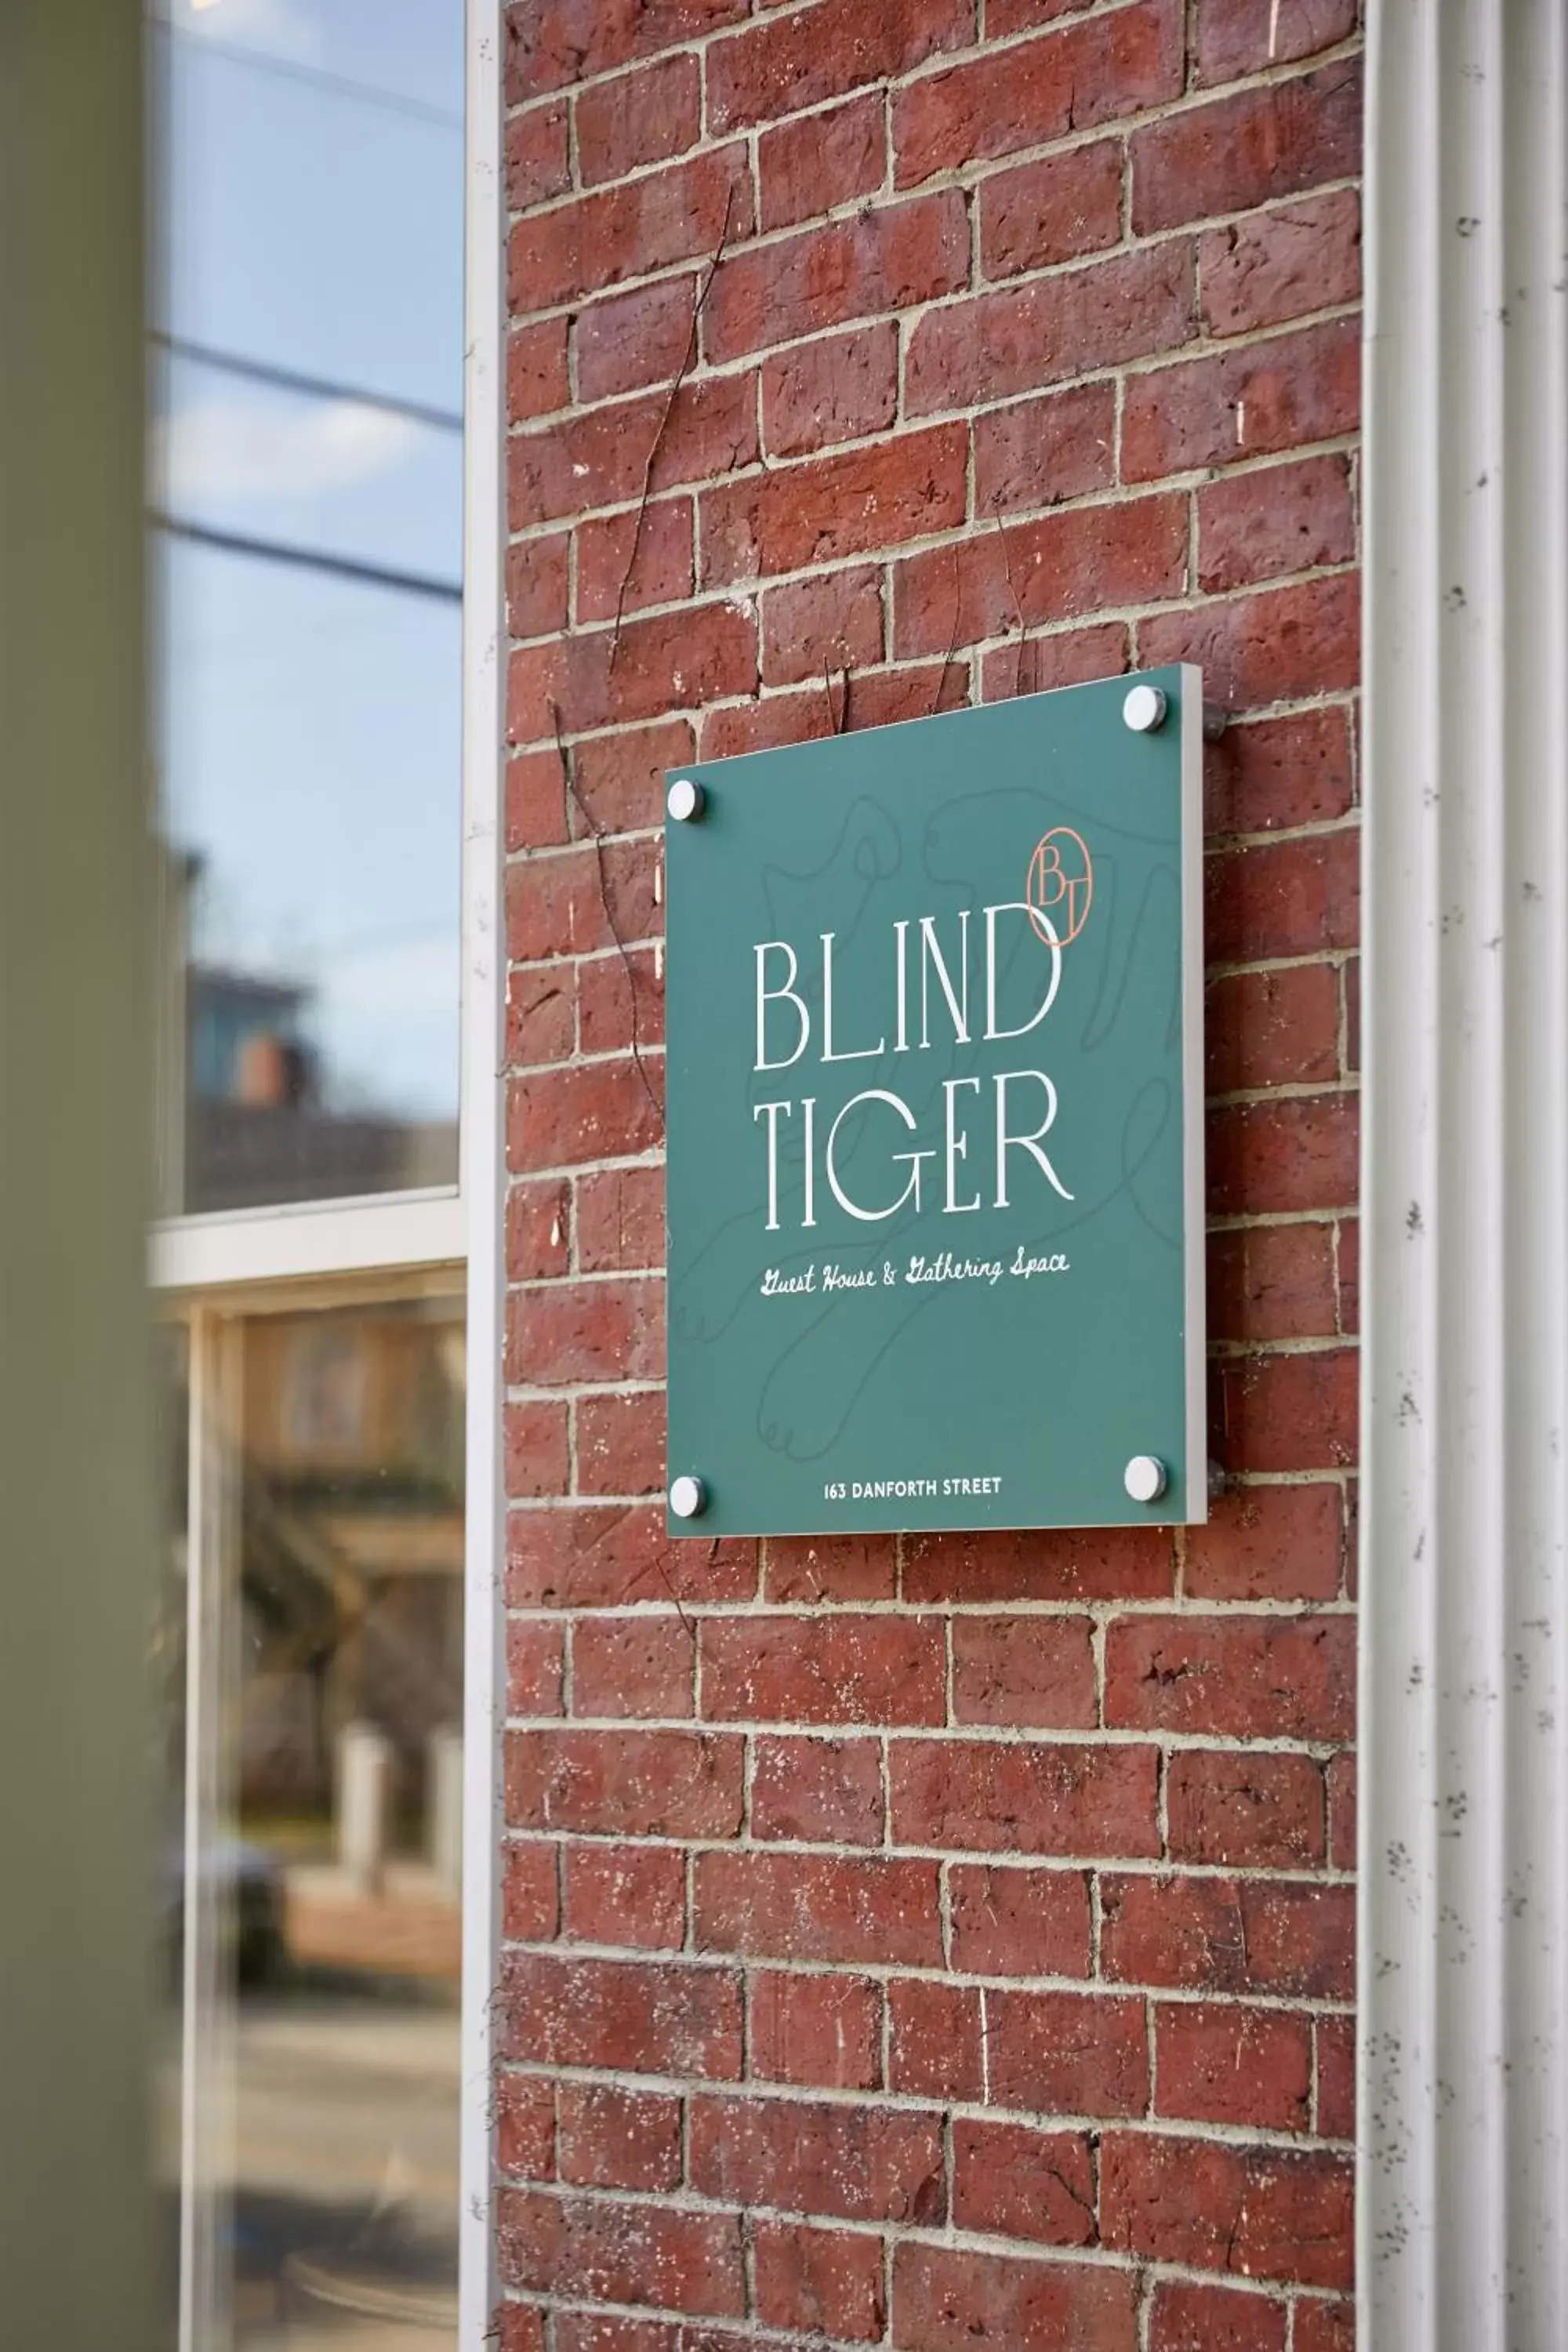 Property building in Blind Tiger Portland - Danforth Street